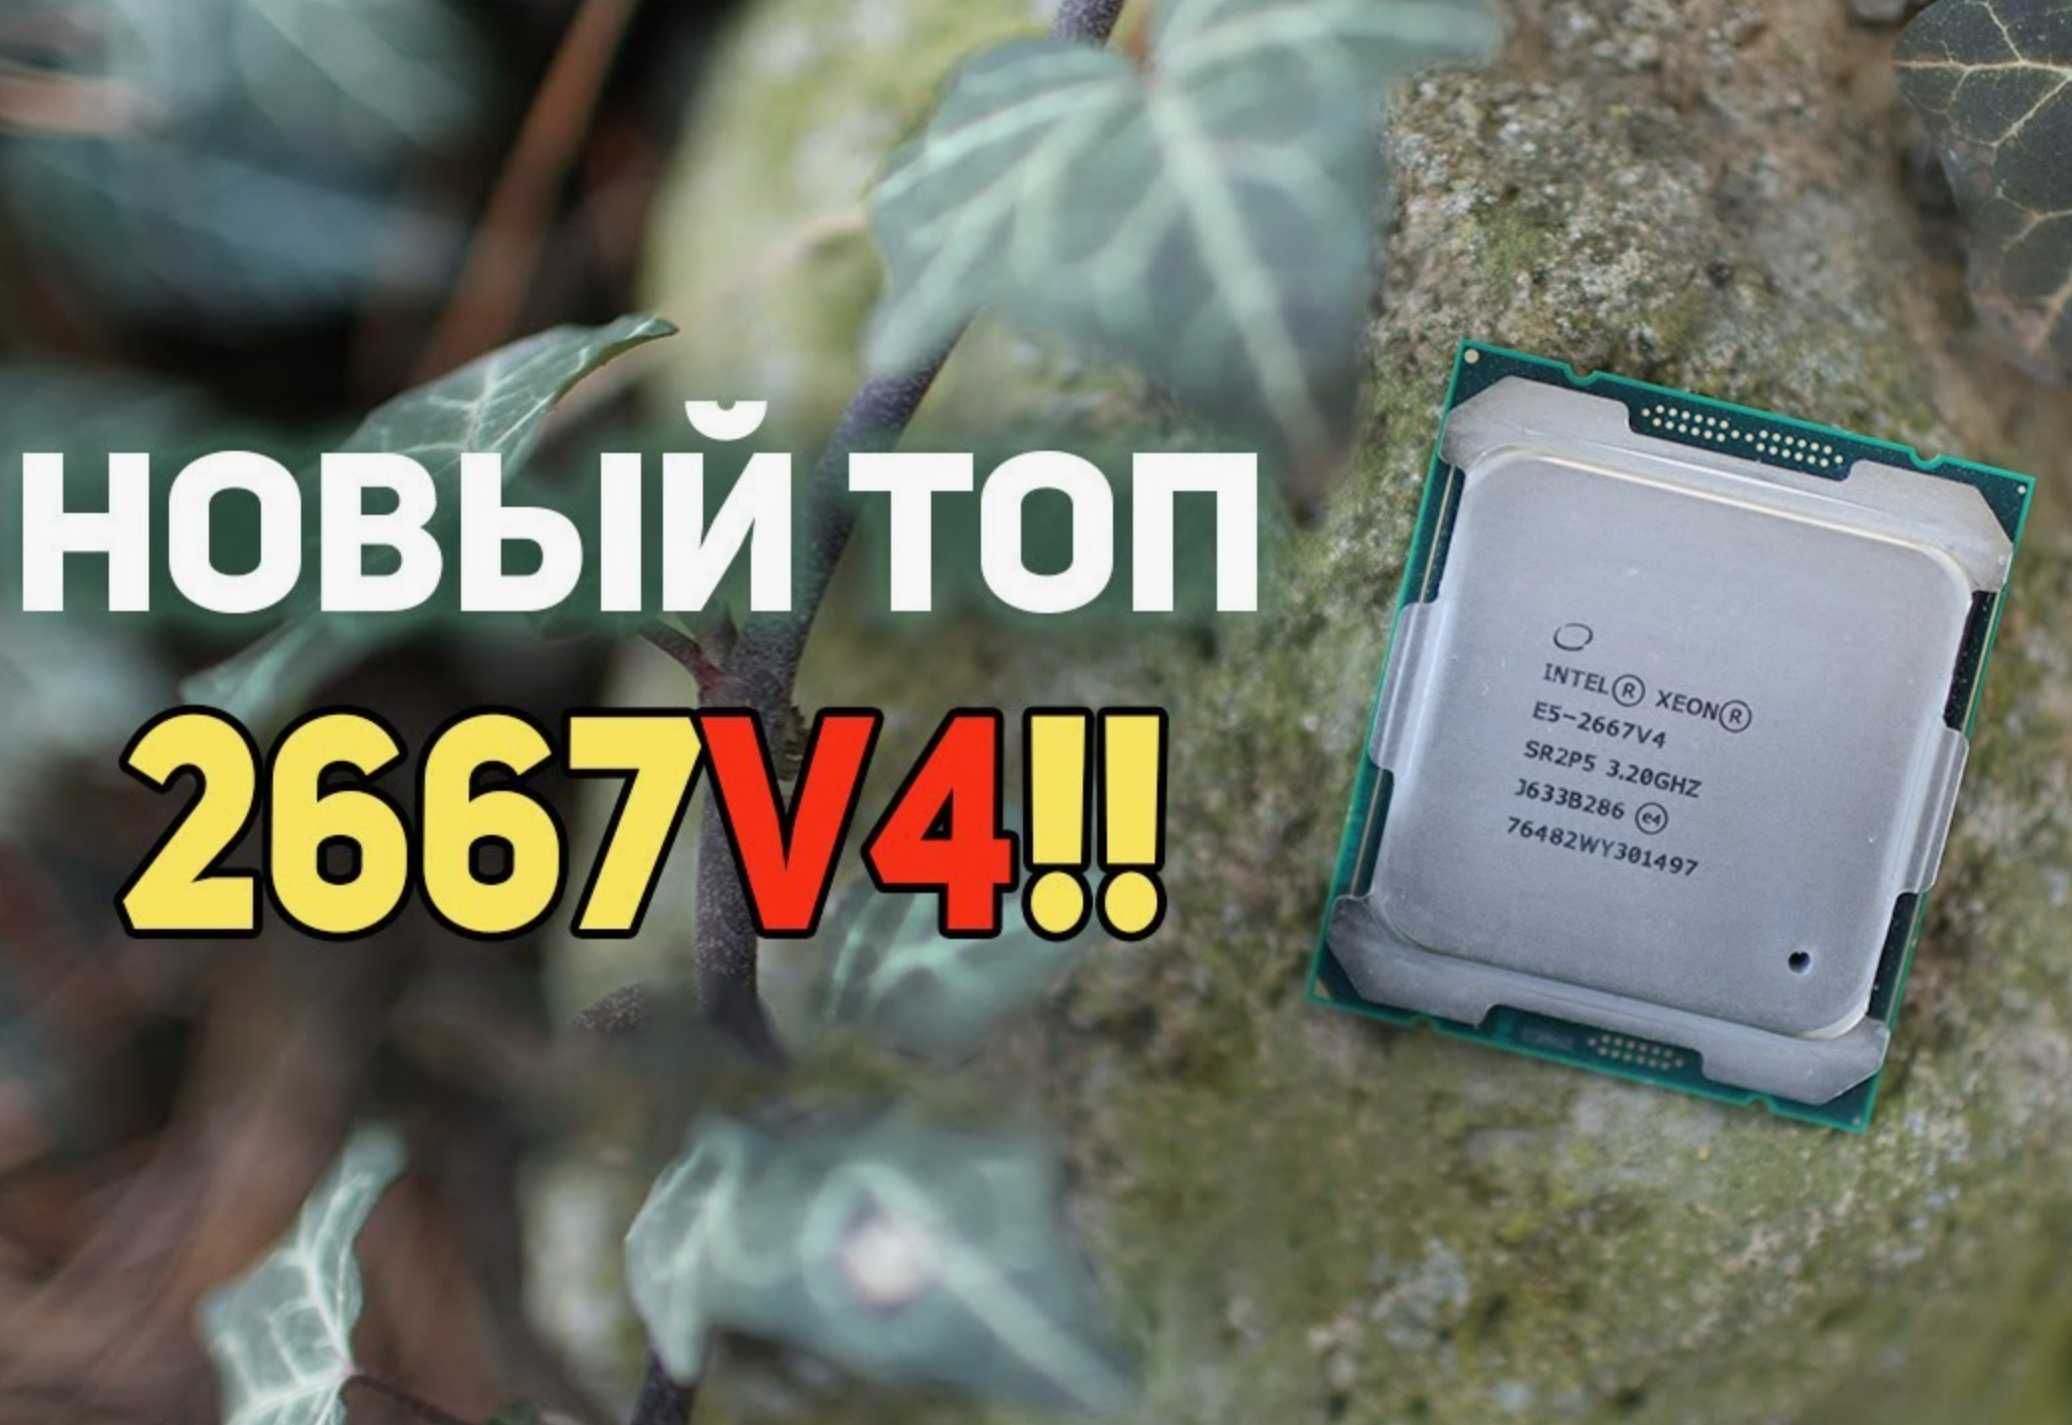 ТОПовый восьмиядерник Intel Xeon E5-2667 v4